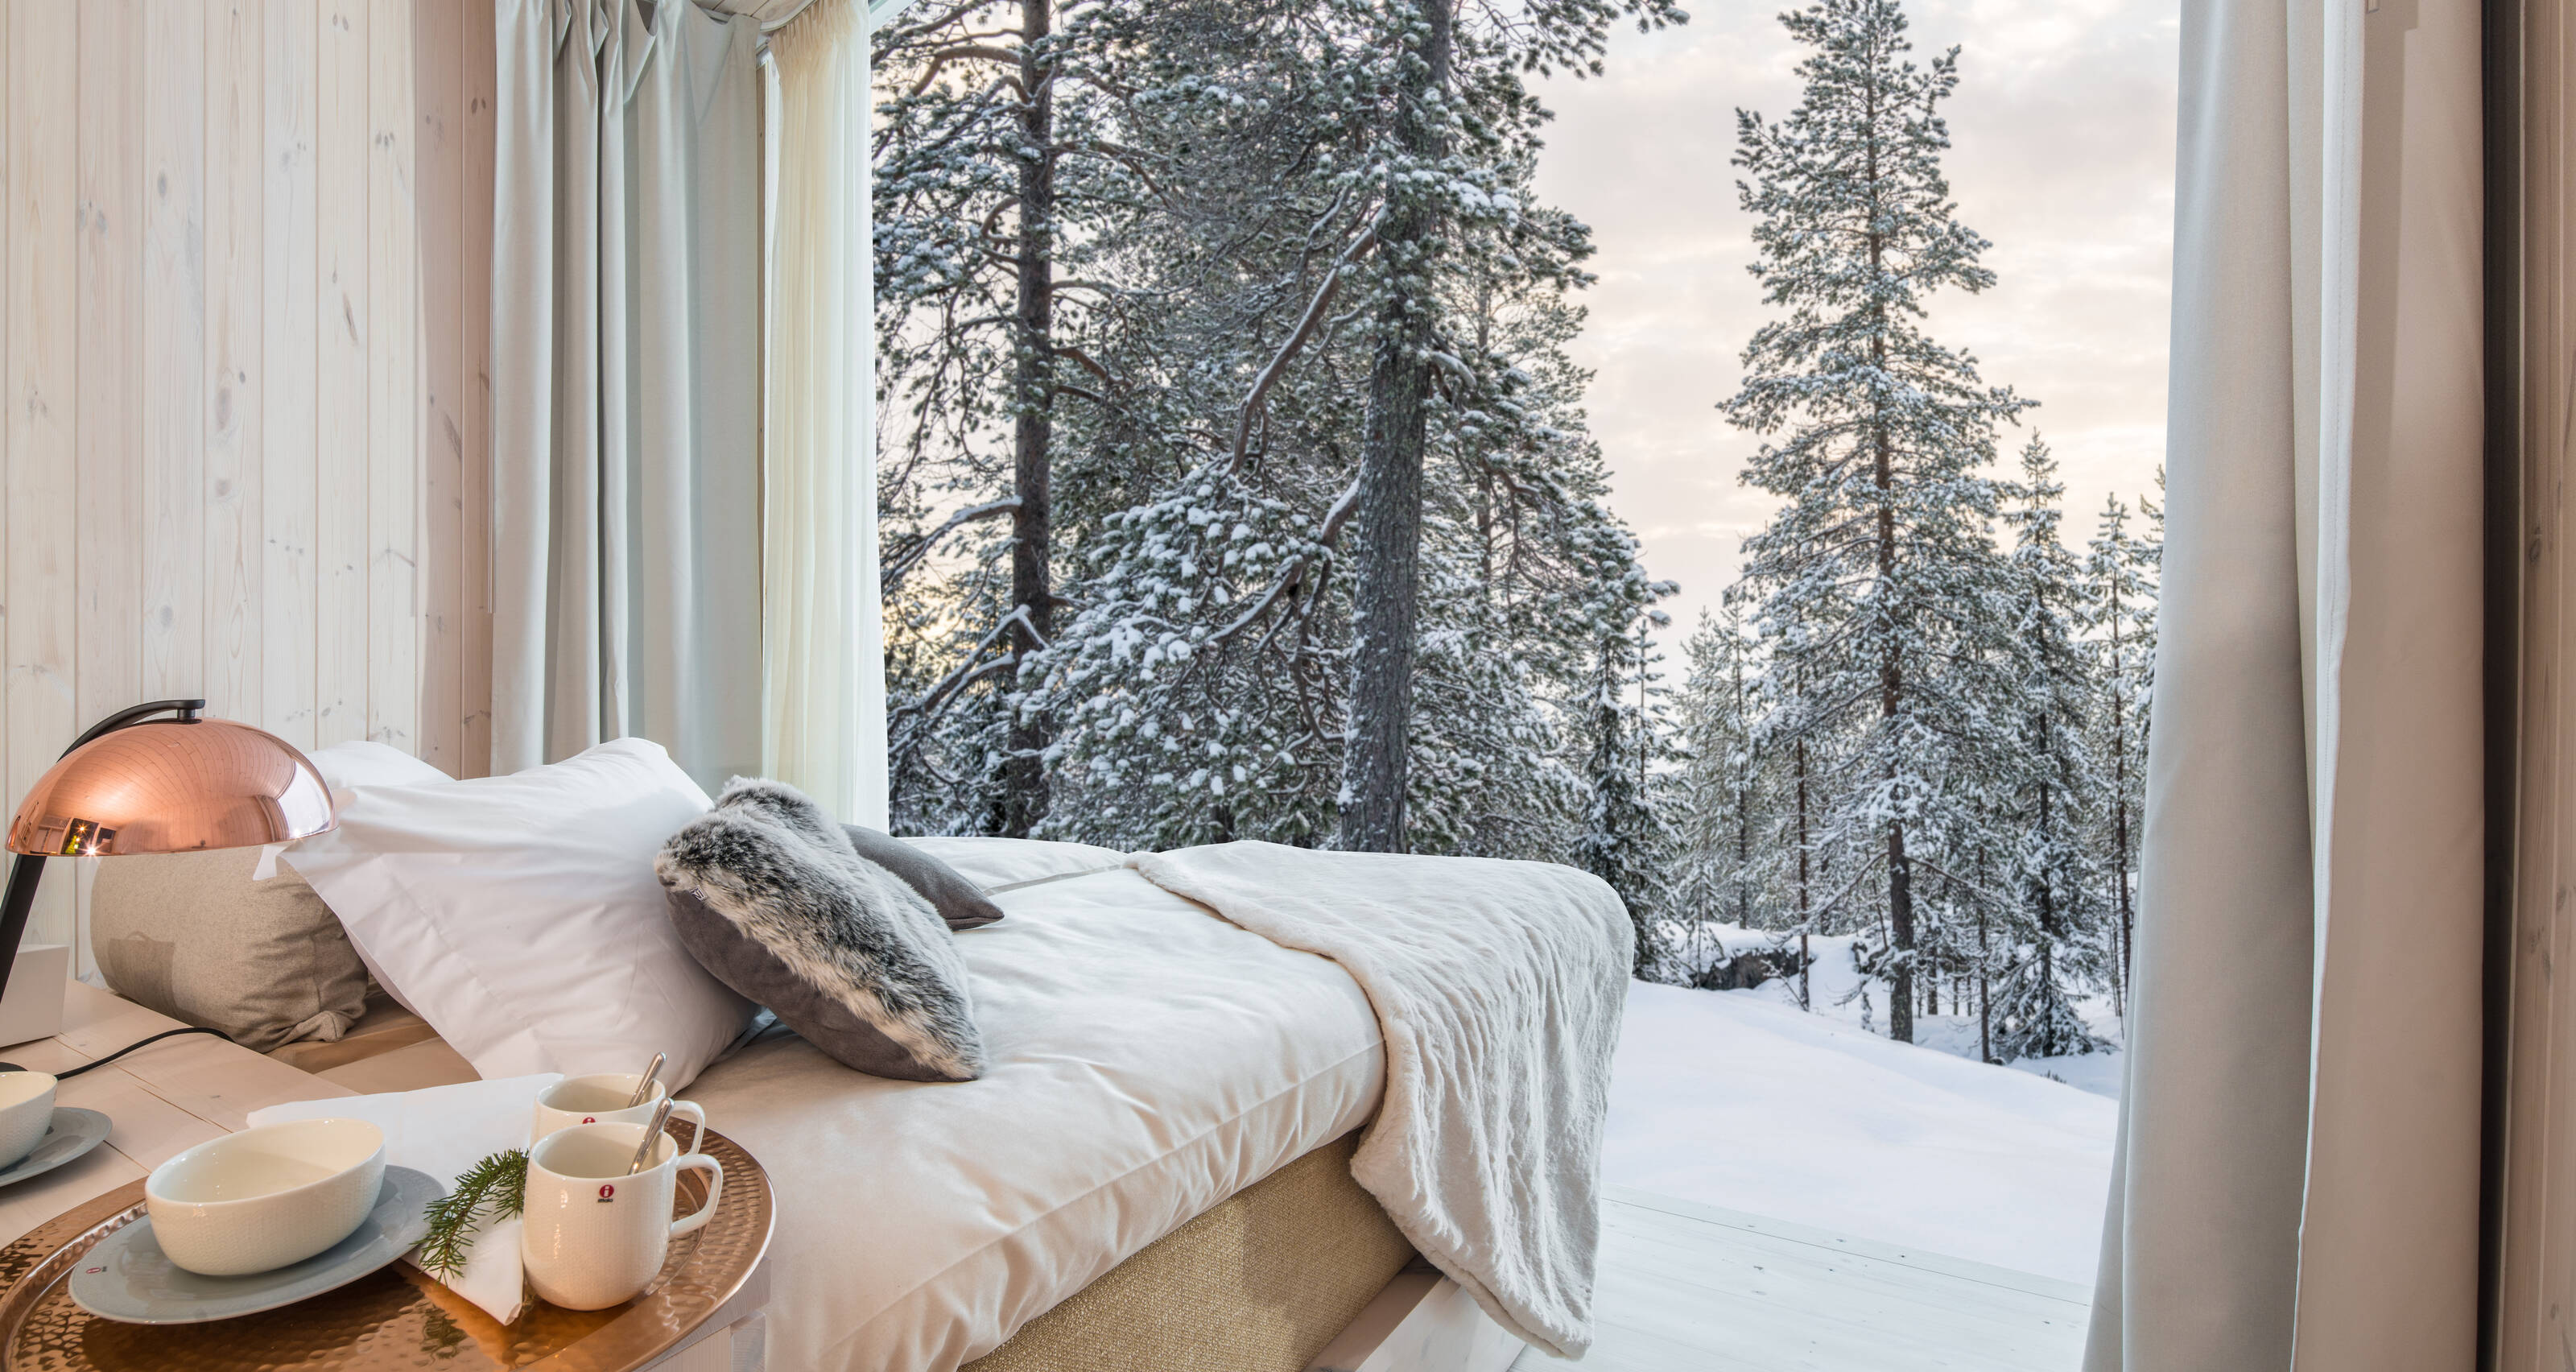 Une suite d’hôtel avec vue sur une forêt finlandaise enneigée